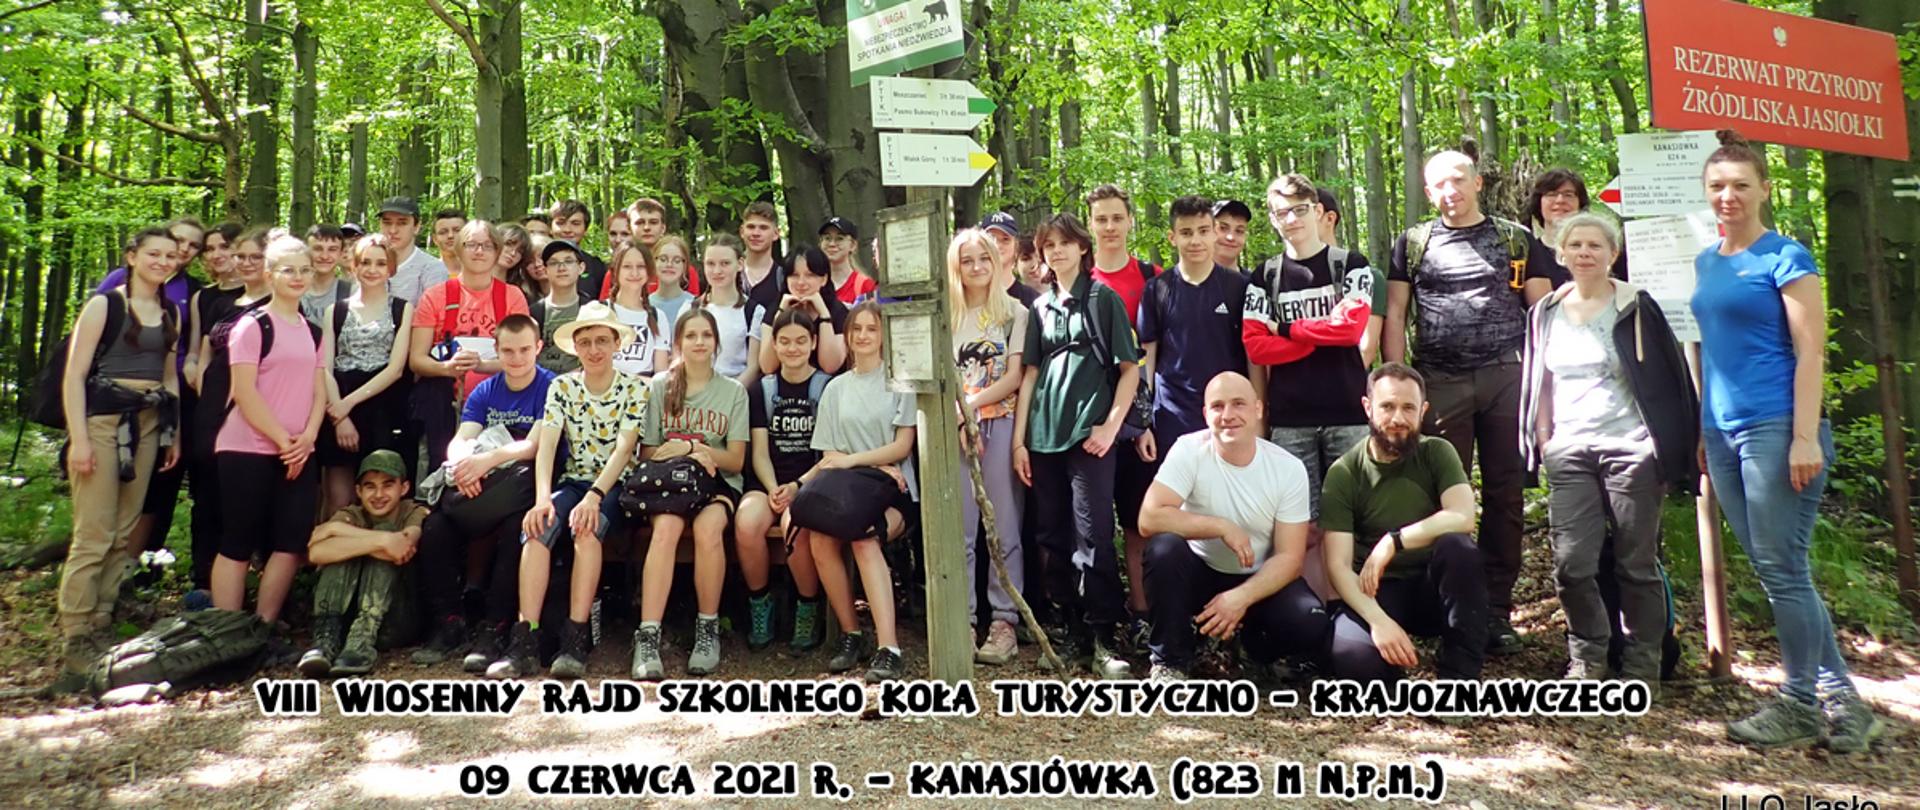 Zdjęcie grupowe uczestników VIII Wiosennego Rajdu Szkolnego Koła Turystyczno Krajoznawczego